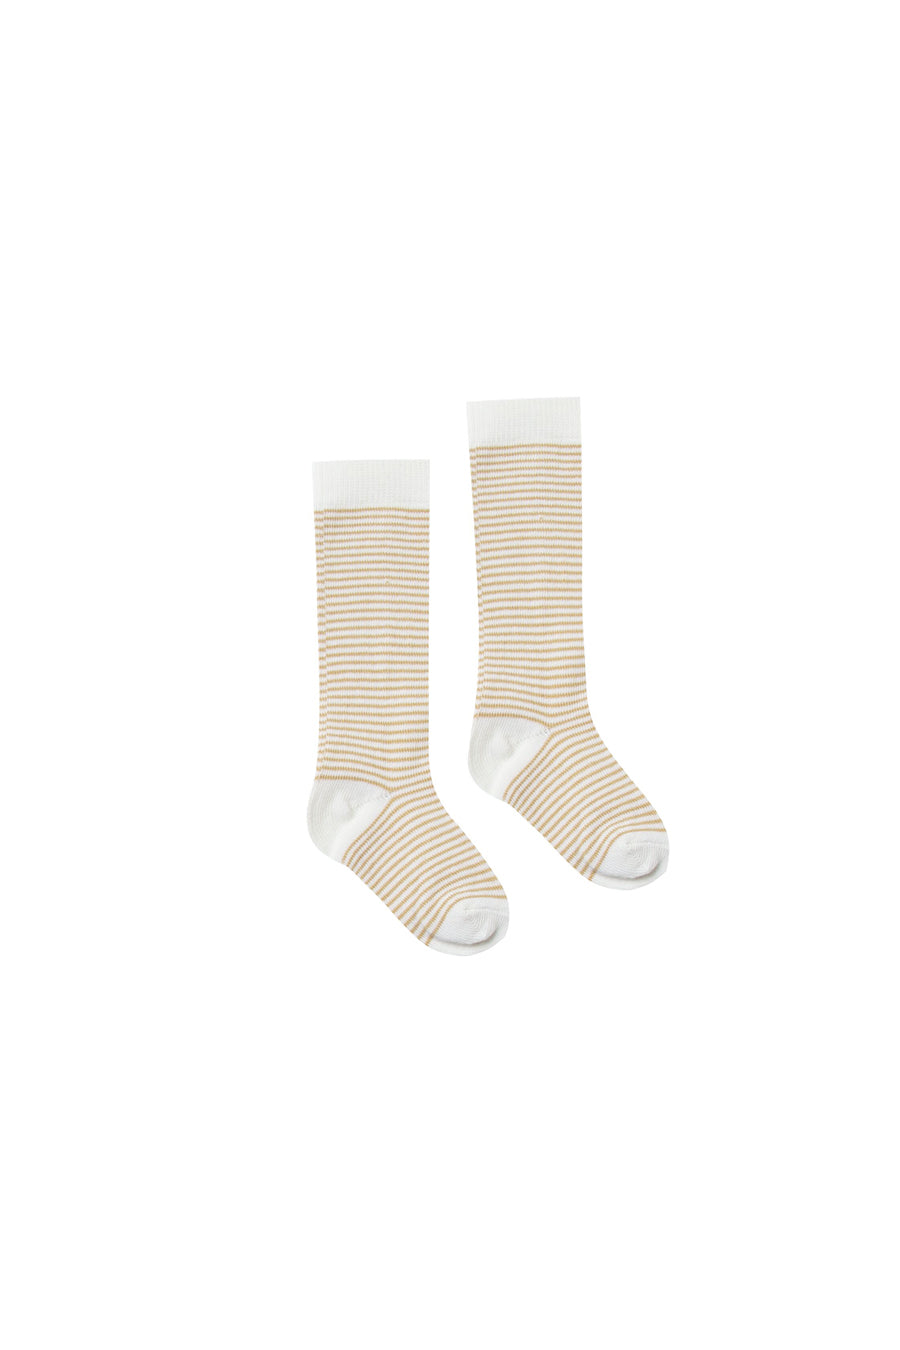 Rylee + Cru Stripe Socks